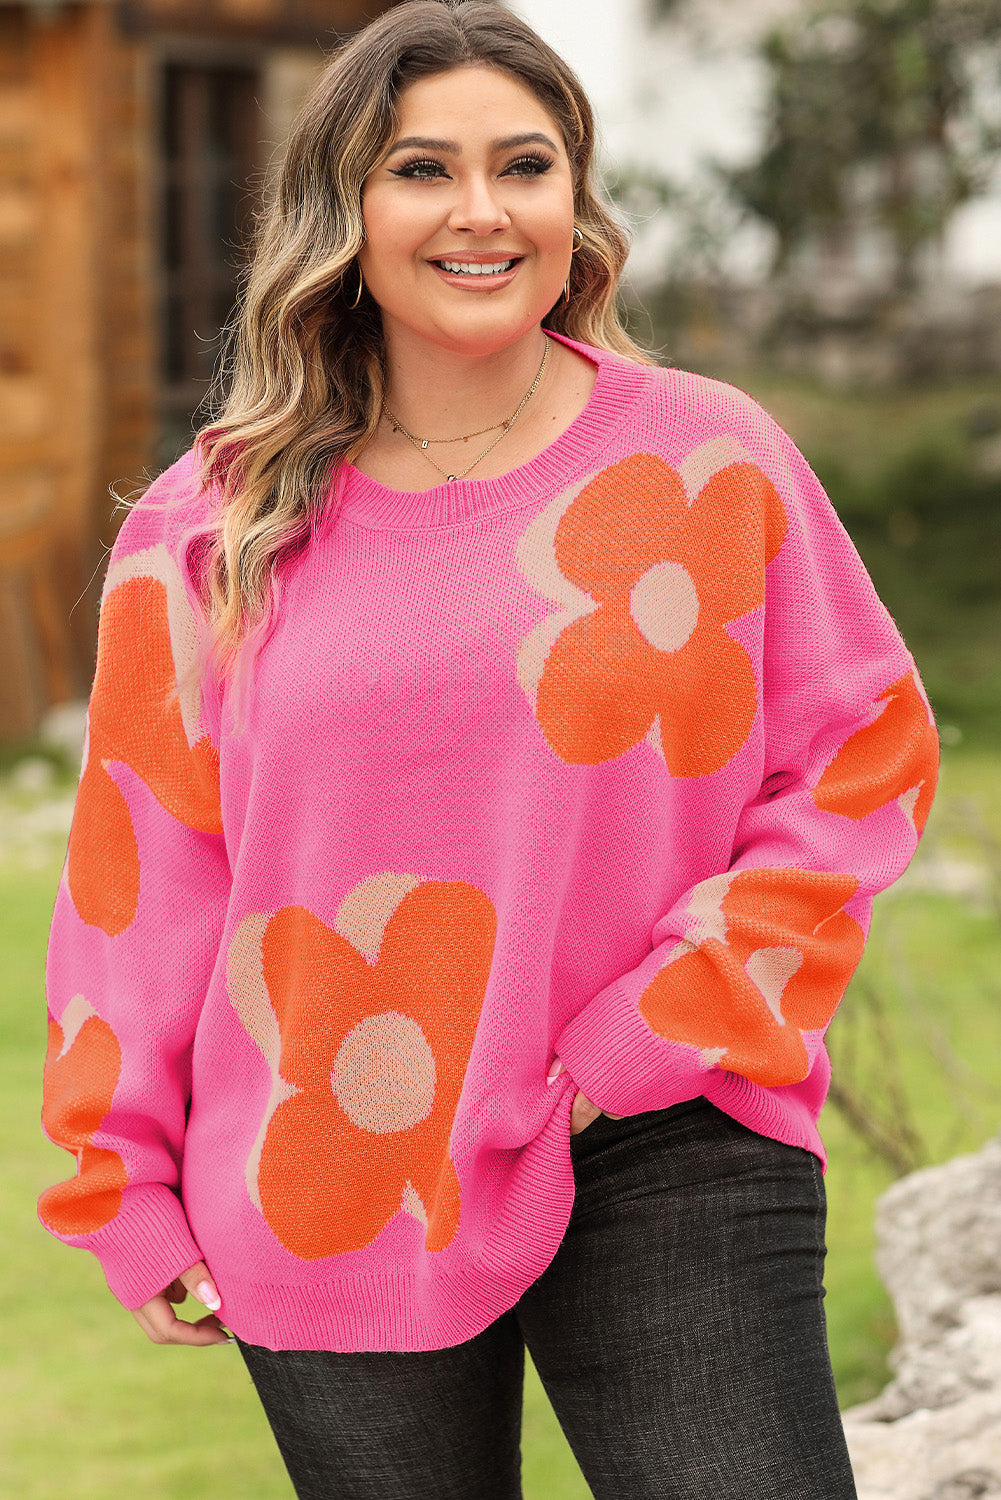 Bonbon pulover s cvjetnim uzorkom veće veličine na spuštena ramena